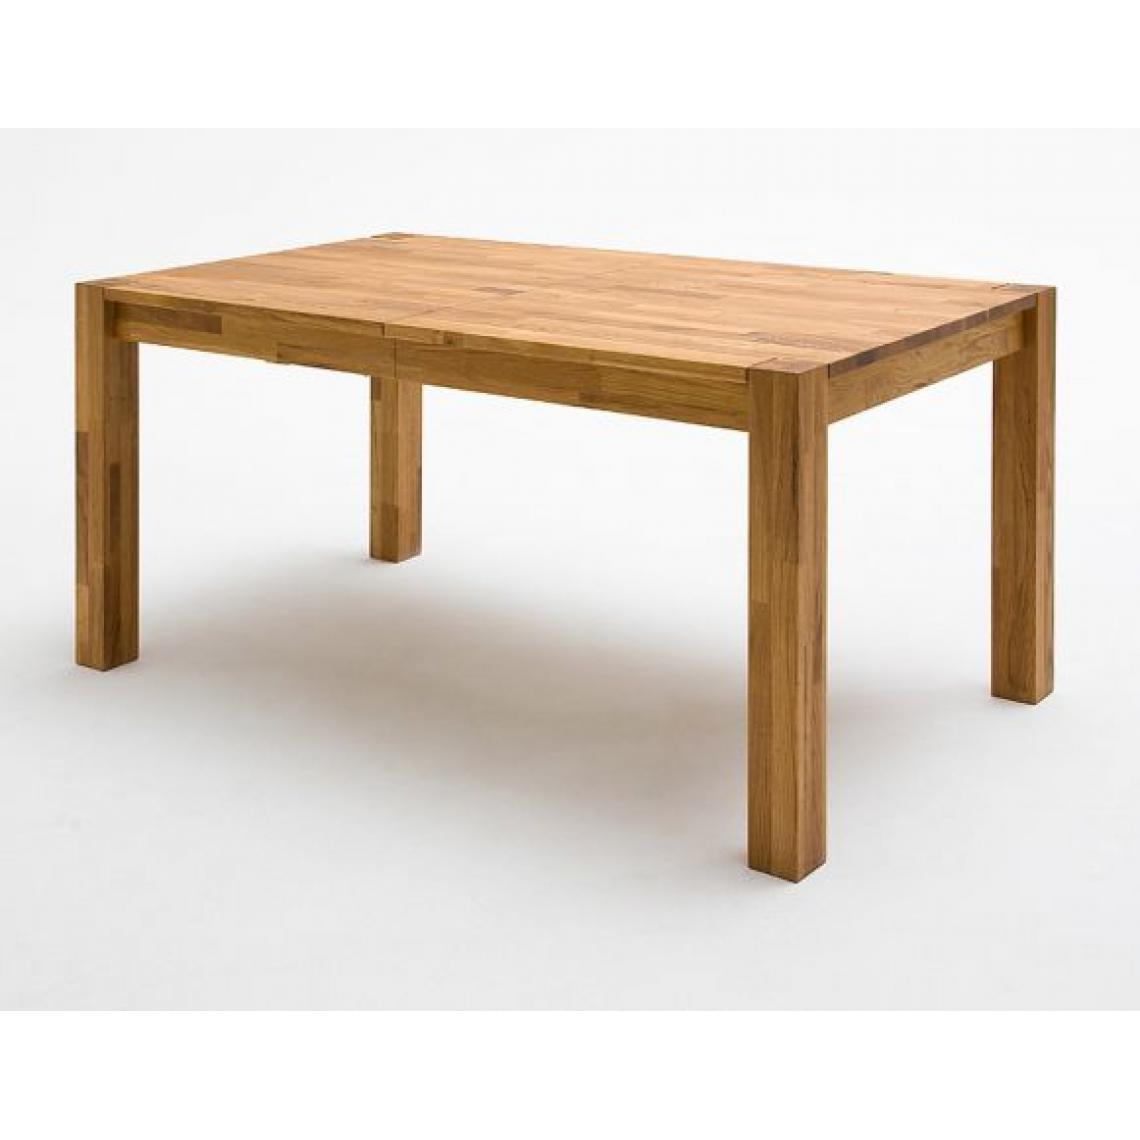 Pegane - Table à manger extensible en chêne sauvage massif huilé - L.200/250/300 x H.77 x P.100 cm - Tables à manger